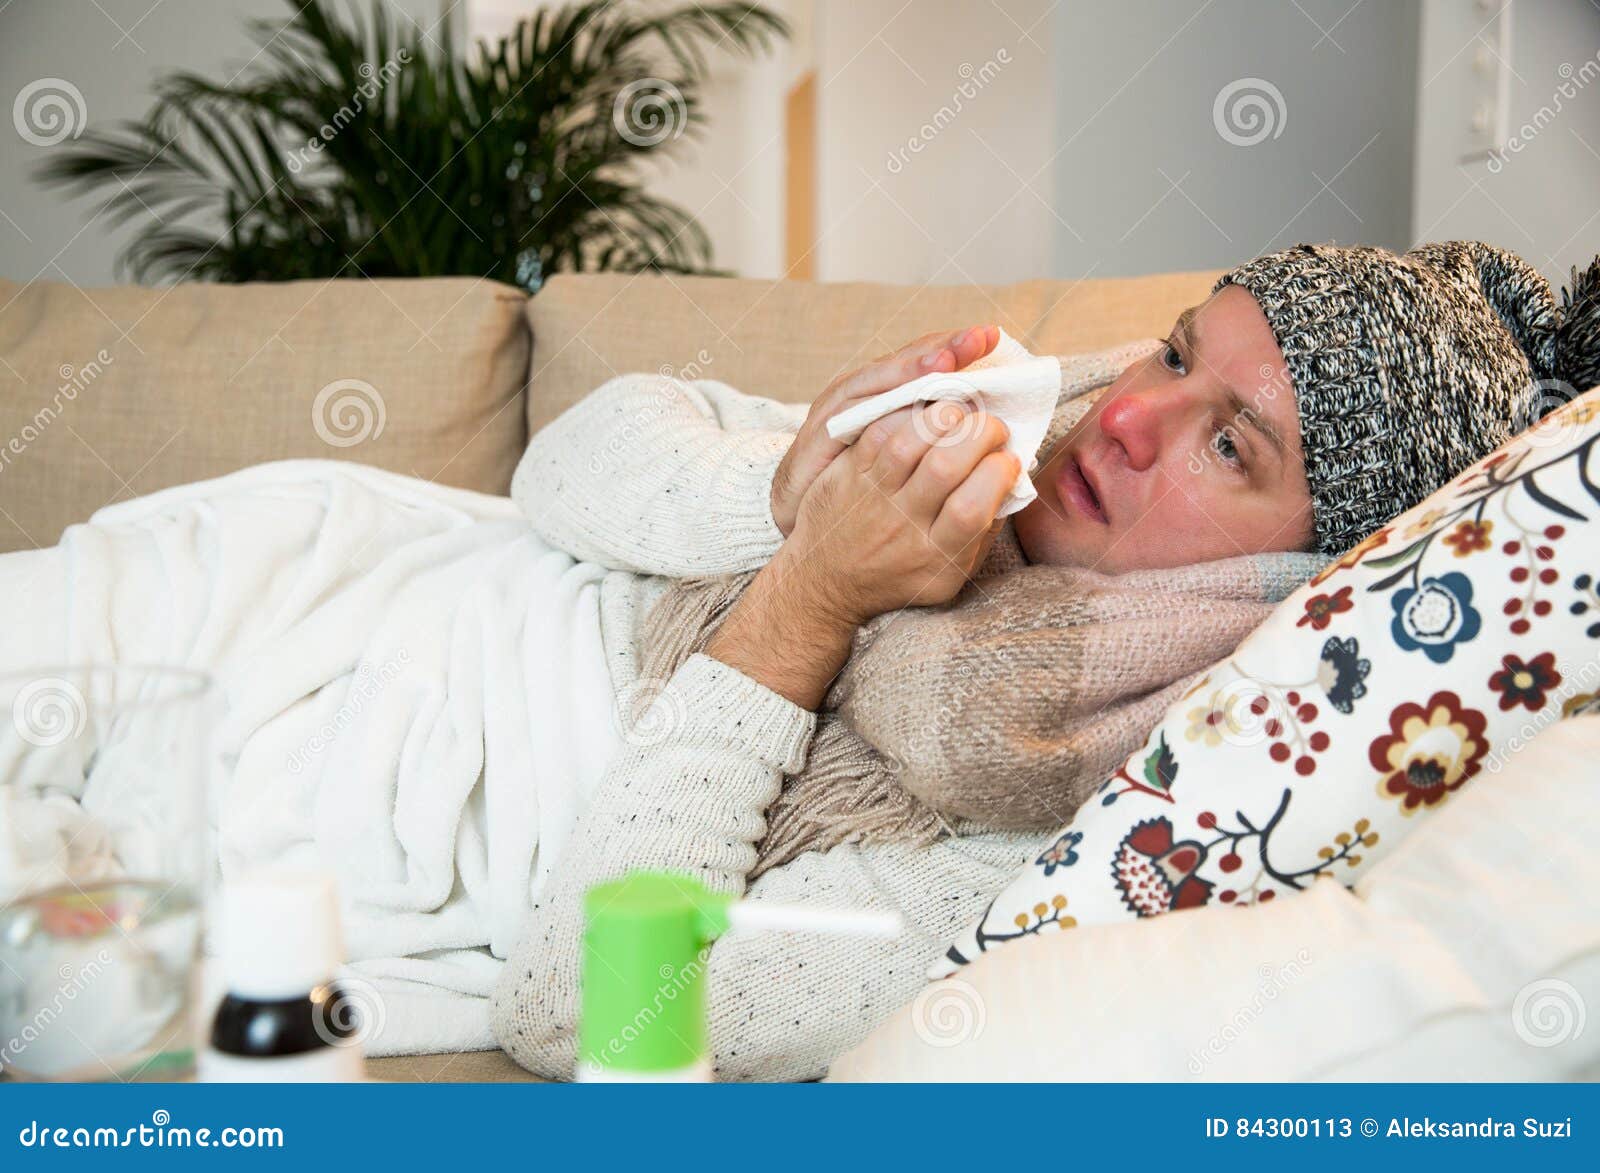 Как выглядит заболевшим. Человек болеет. Больной желтой лихорадкой. Фото болеющего человека.